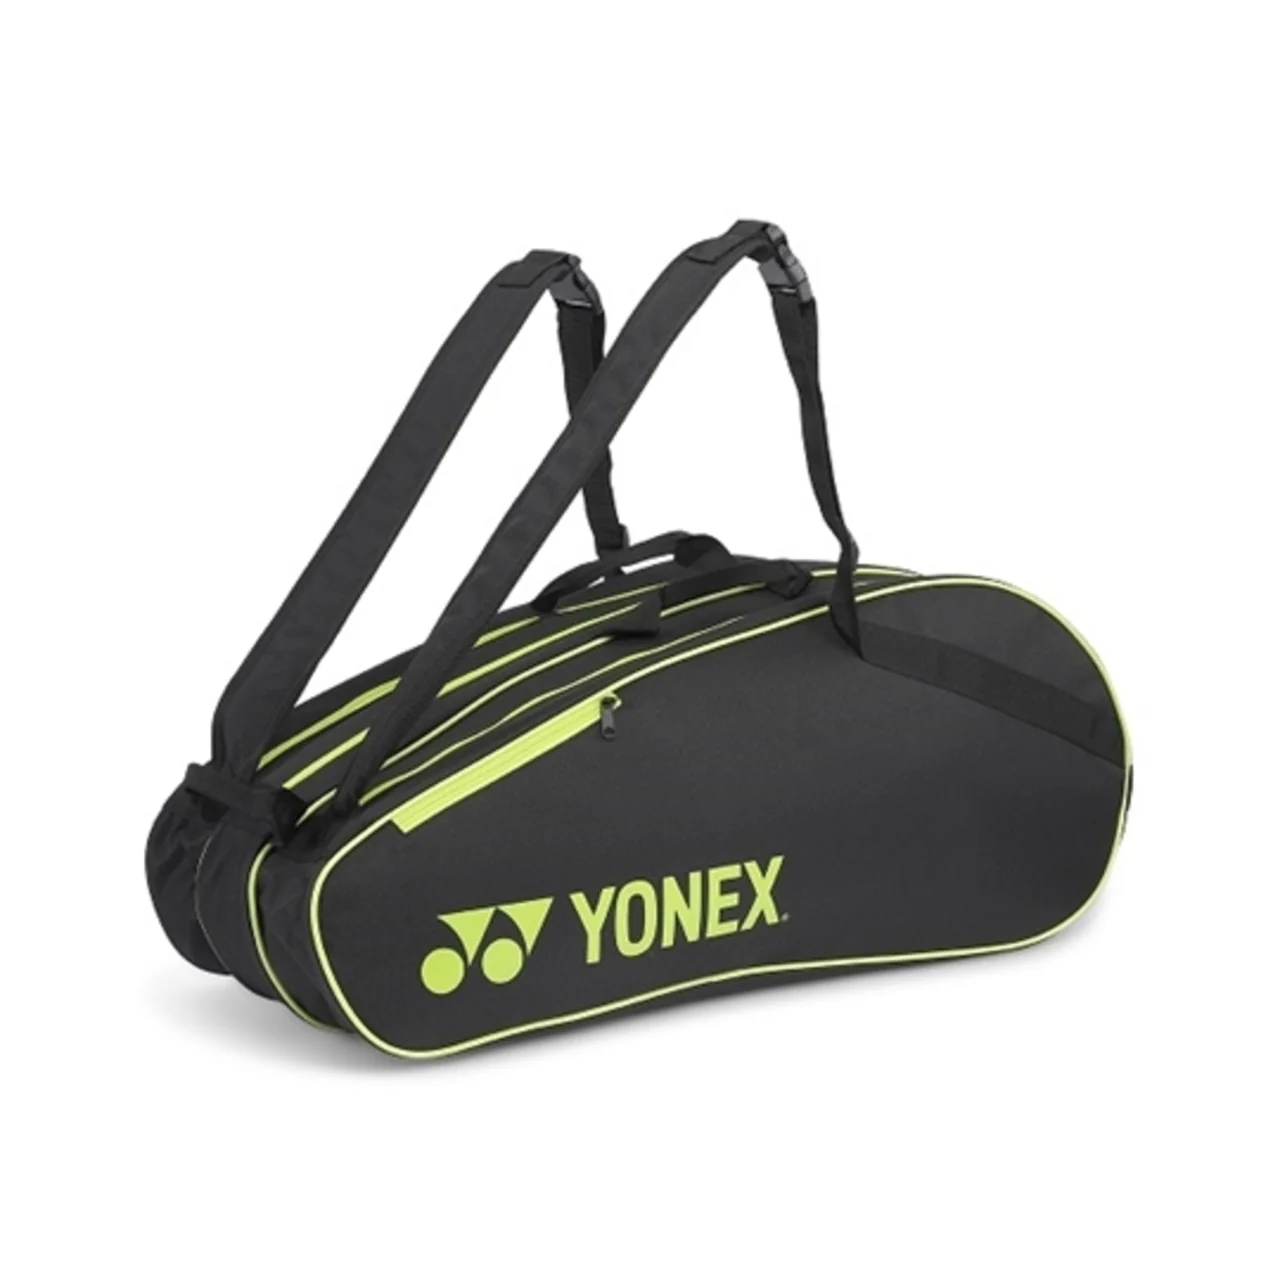 Yonex Bag 202136sc x9 Black